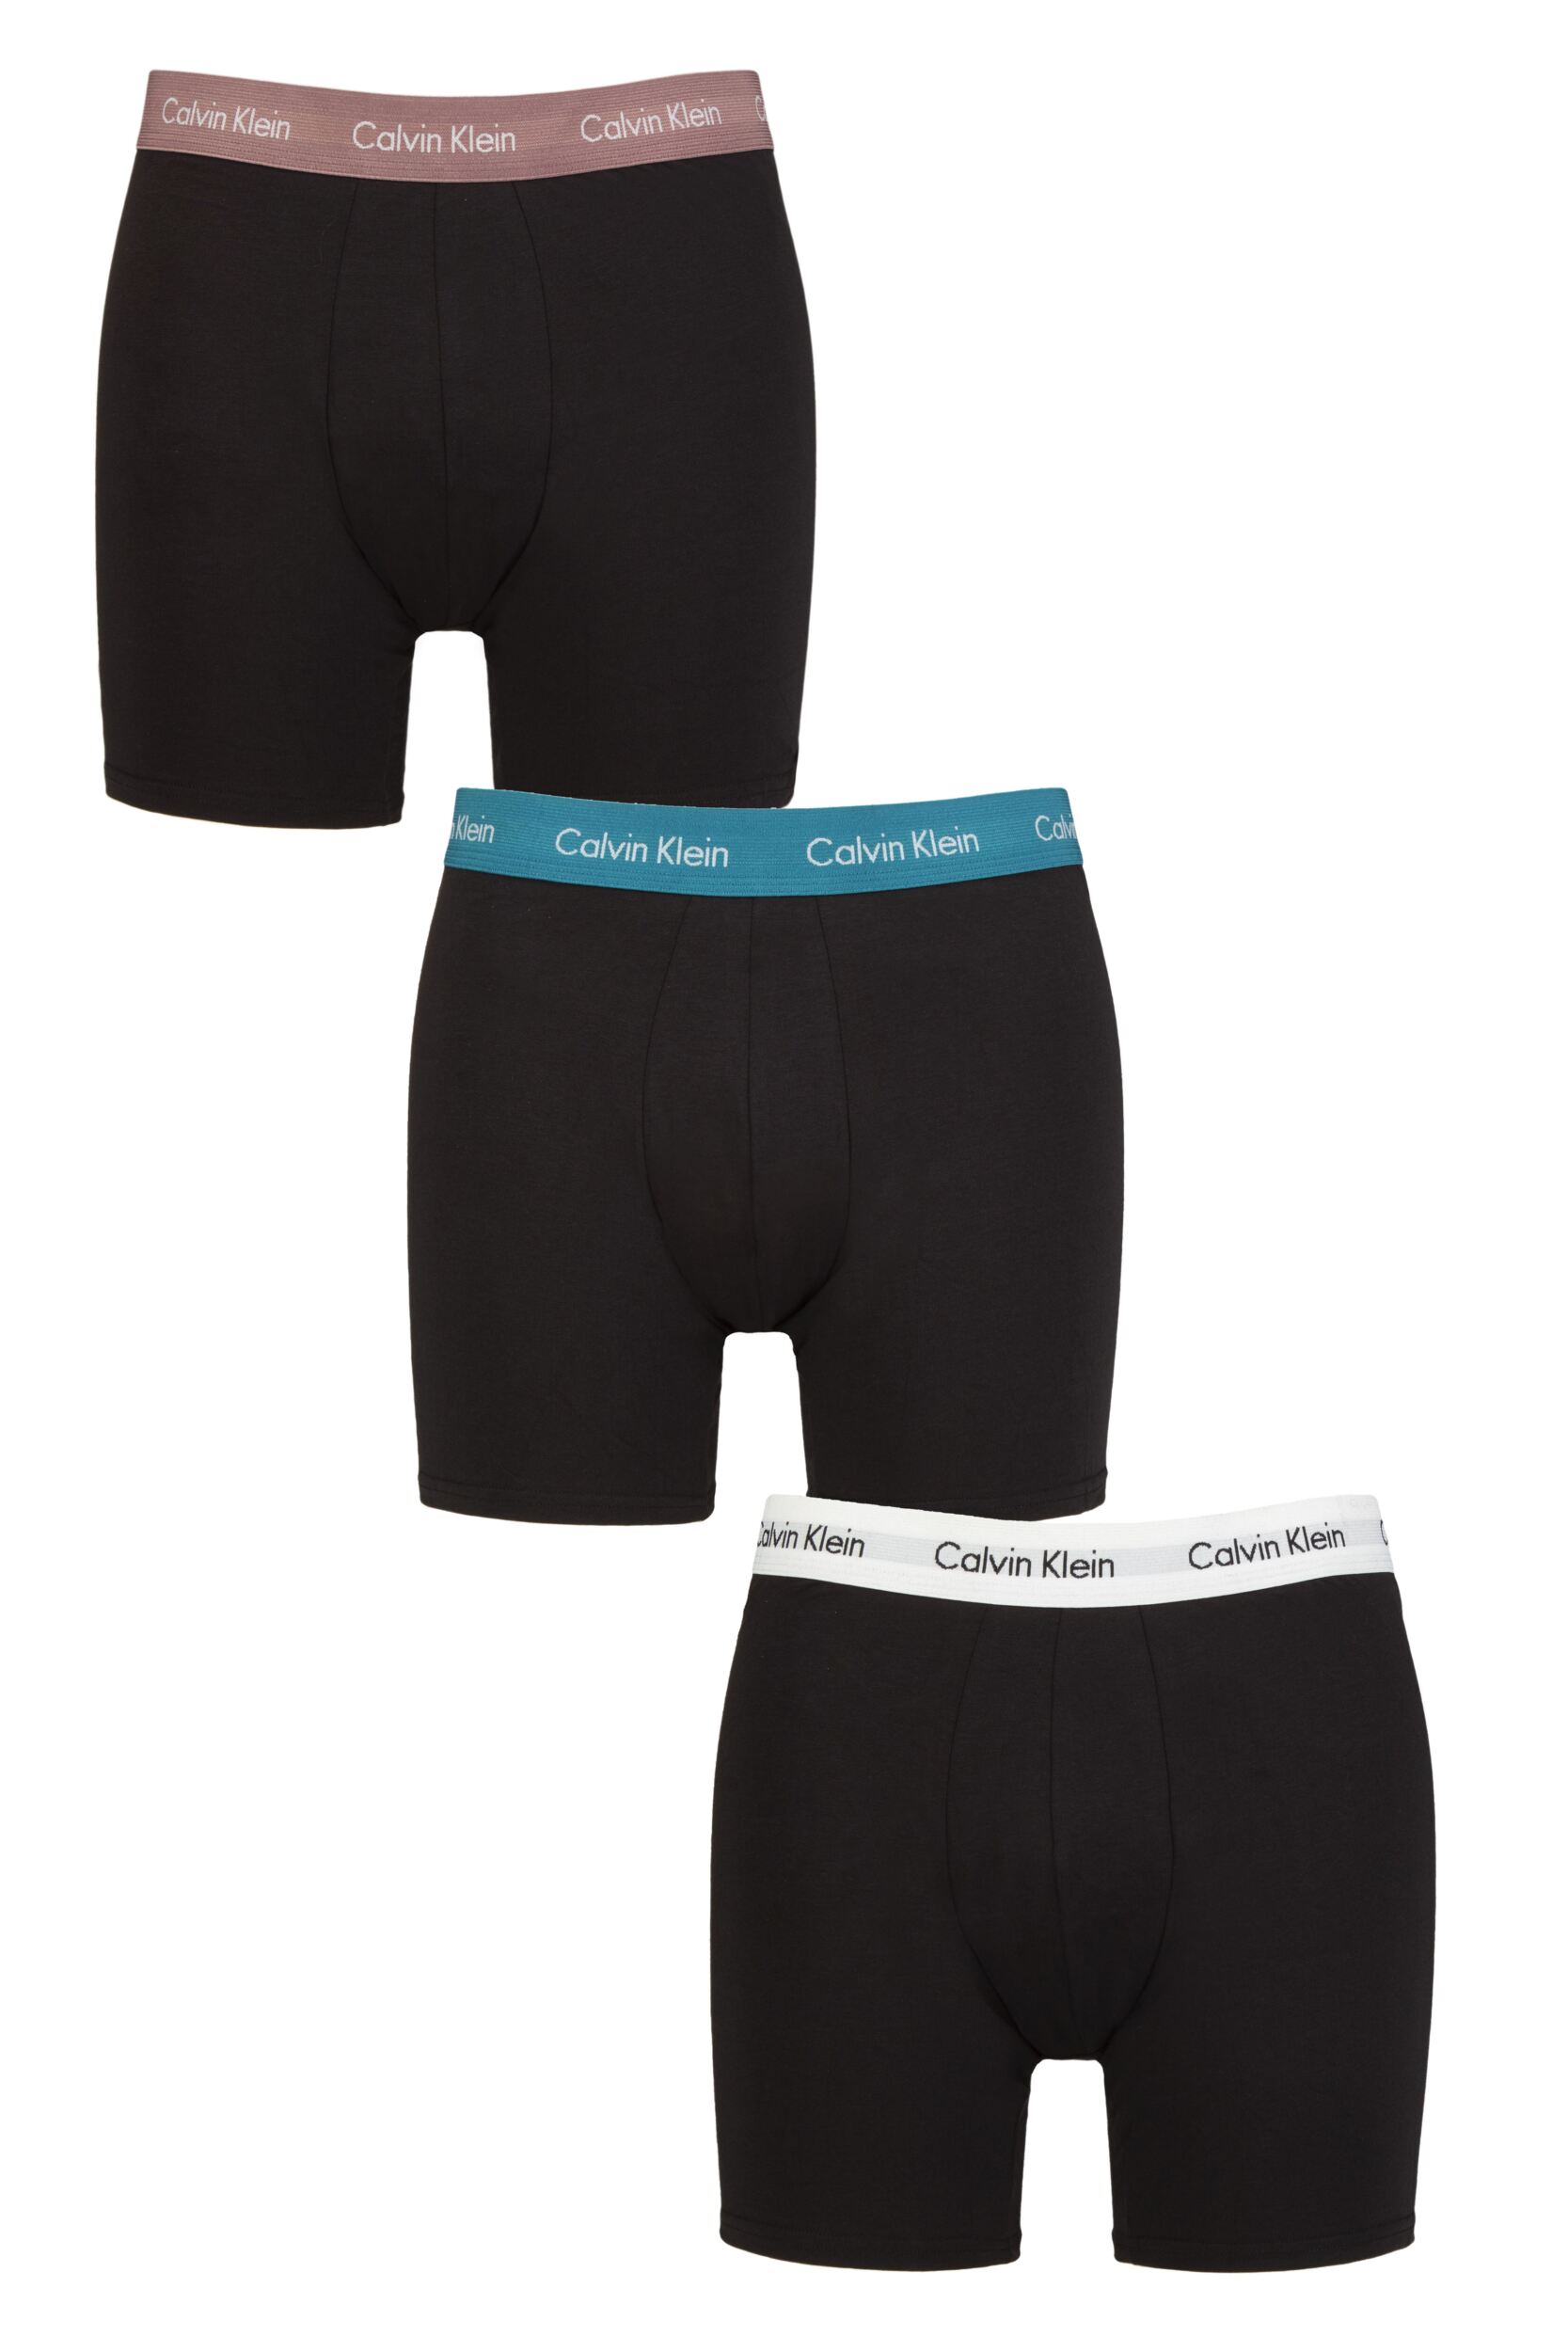 SockShop Mens 3 Pack Calvin Klein Cotton Stretch Longer Leg Trunks Capri / Ocean Depths S  - Black - Size: Small